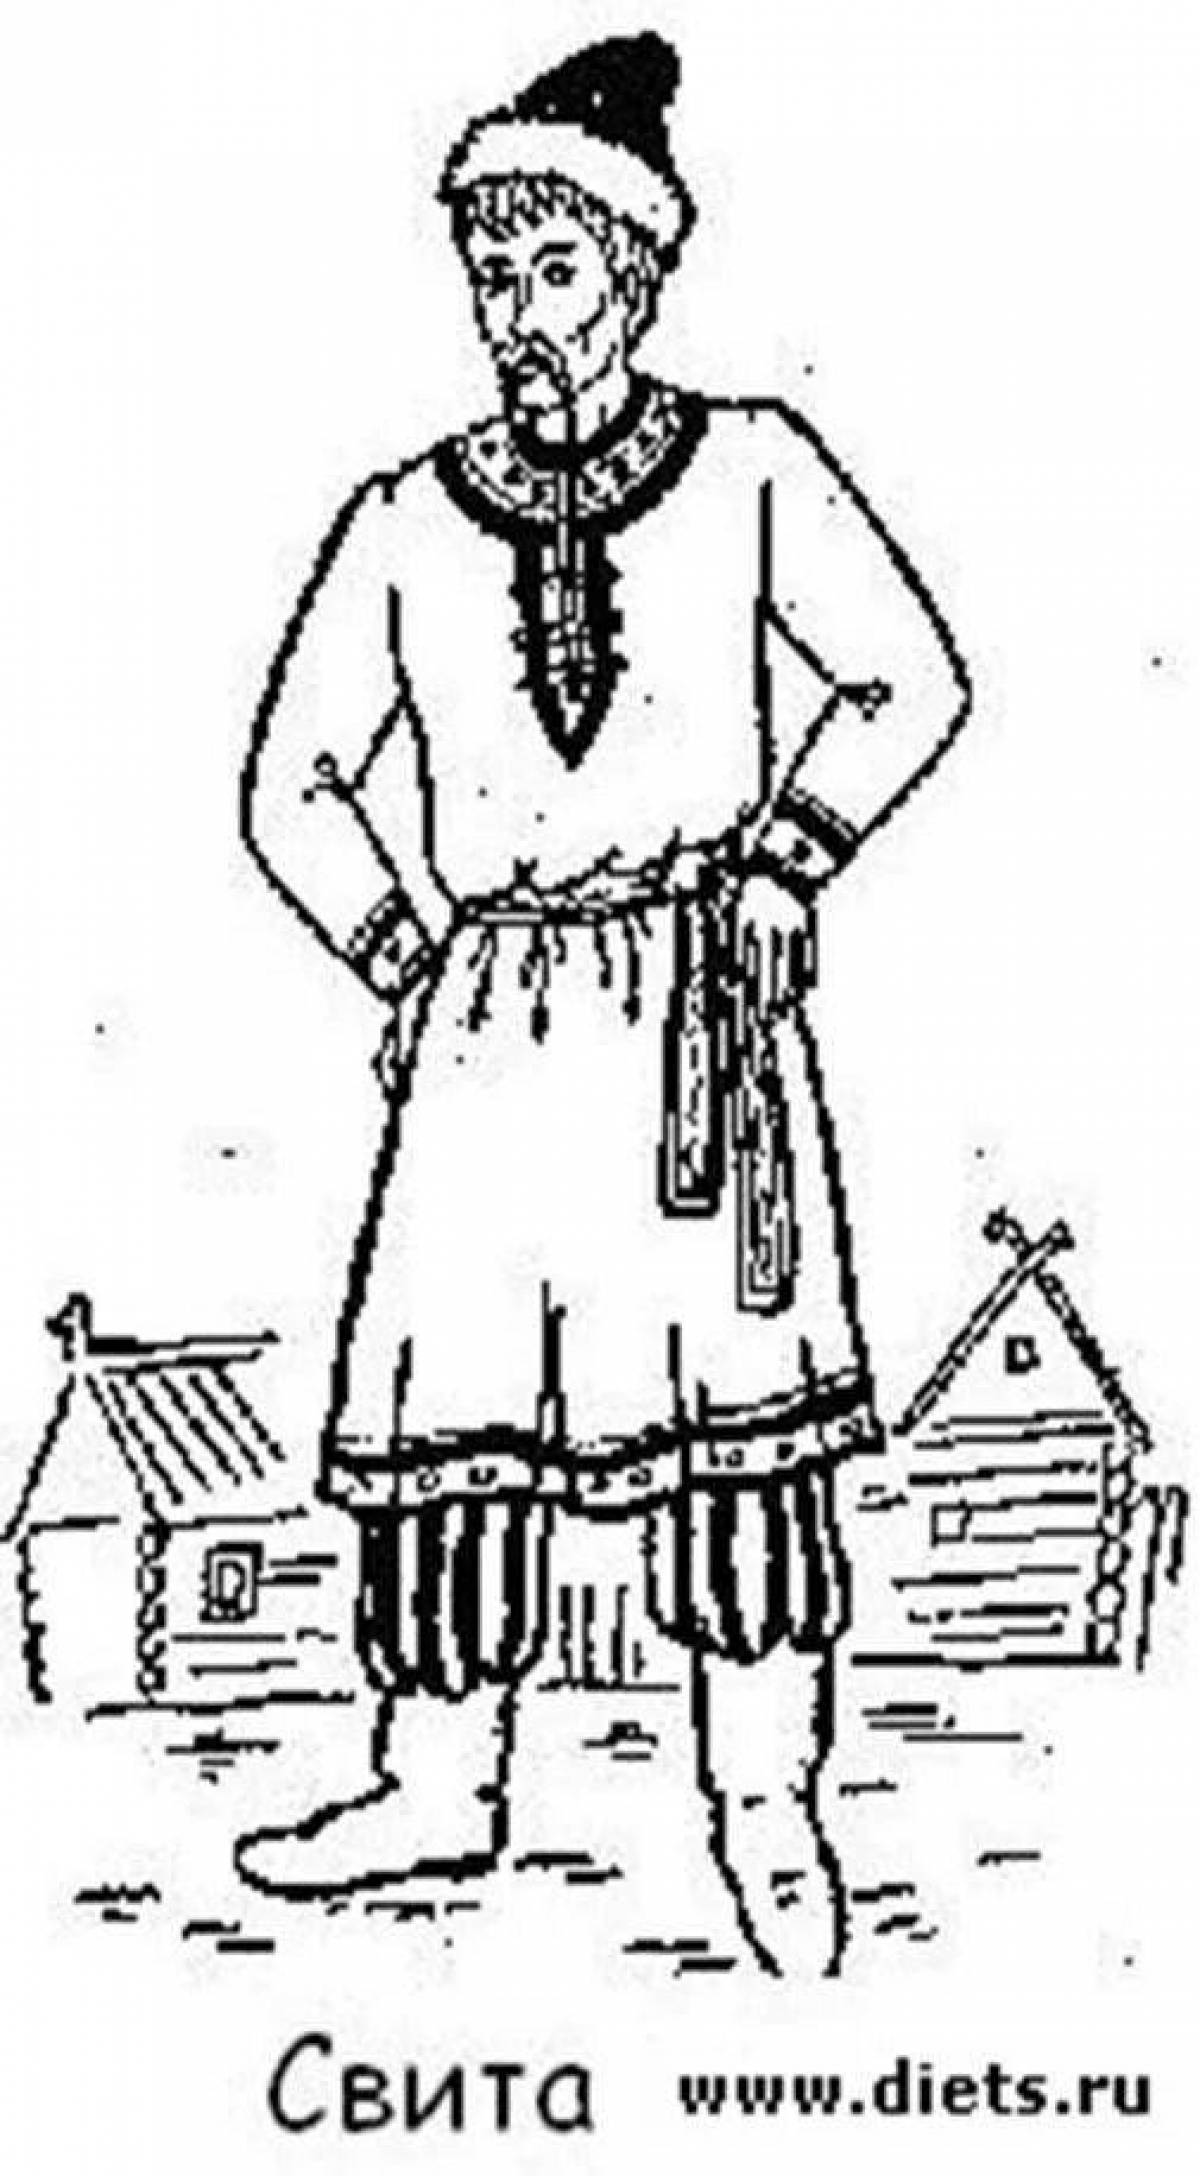 Свита одежда в древней Руси